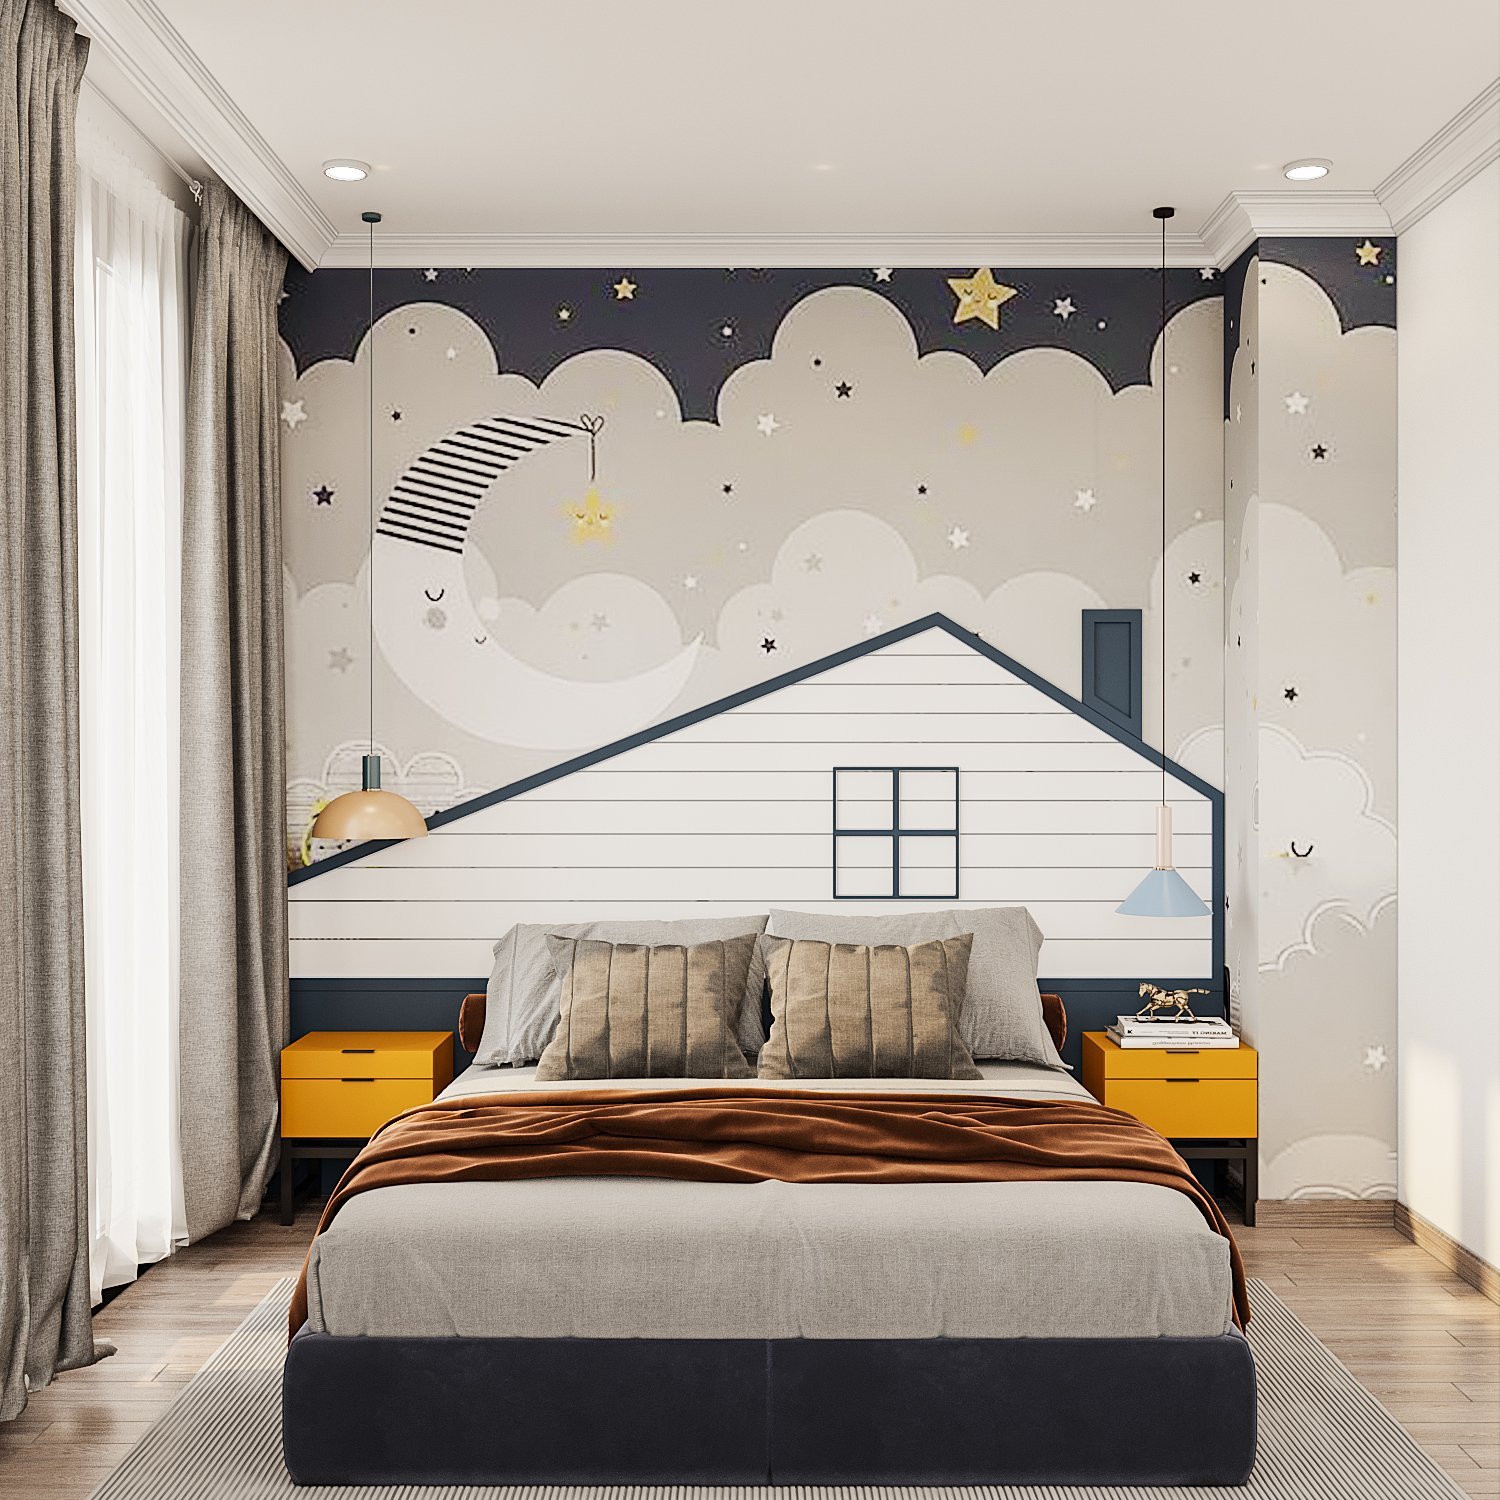 hình ảnh phòng ngủ với tranh tường trăng sao, đám mây, hình ảnh mô hình ngôi nhà, rèm cửa hai lớp